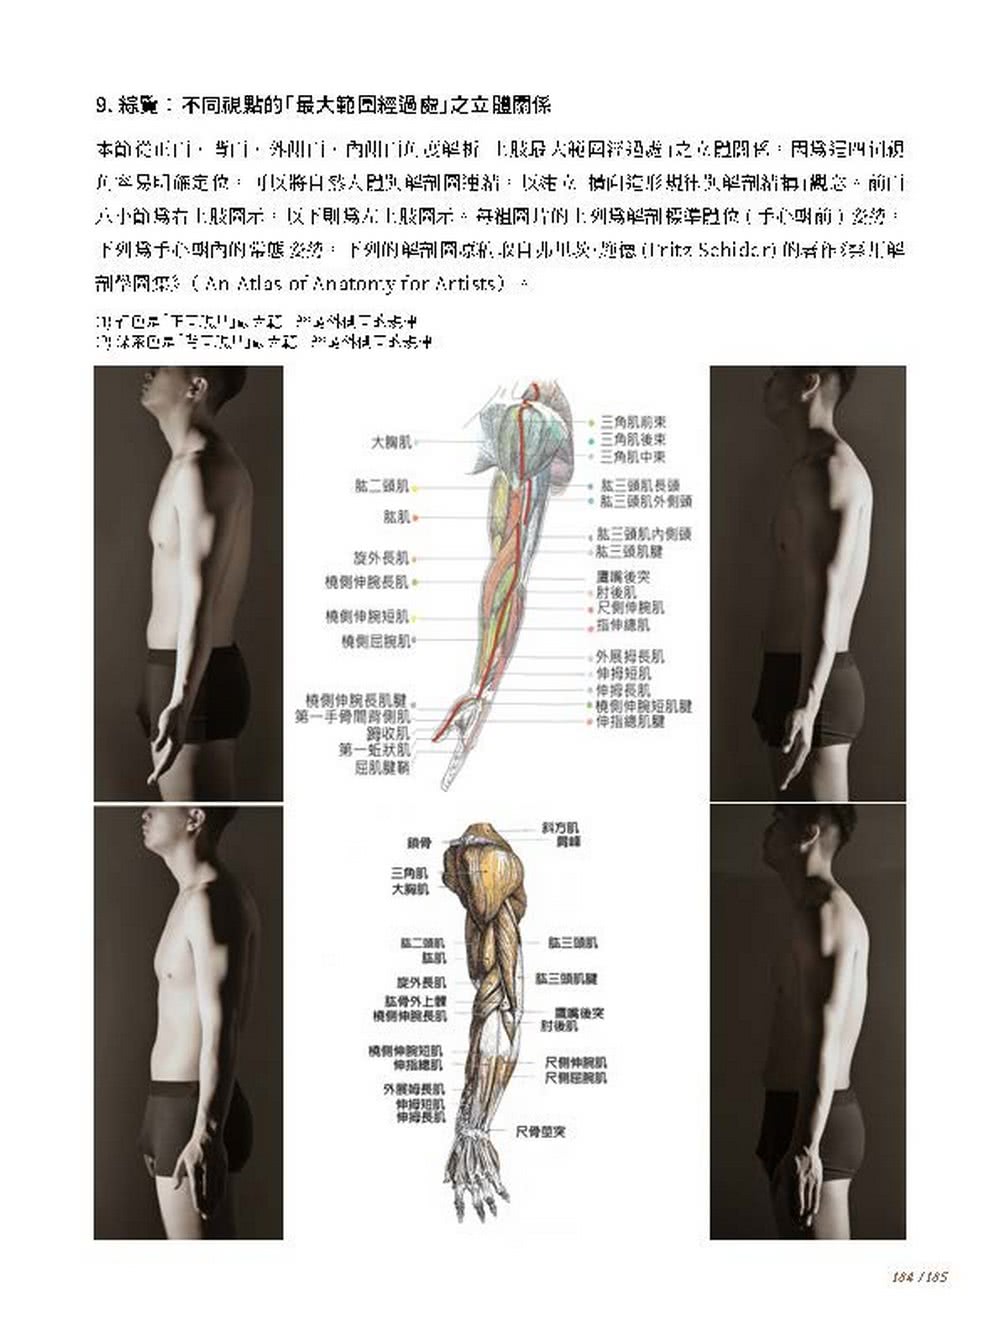 人體造形規律與解剖結構